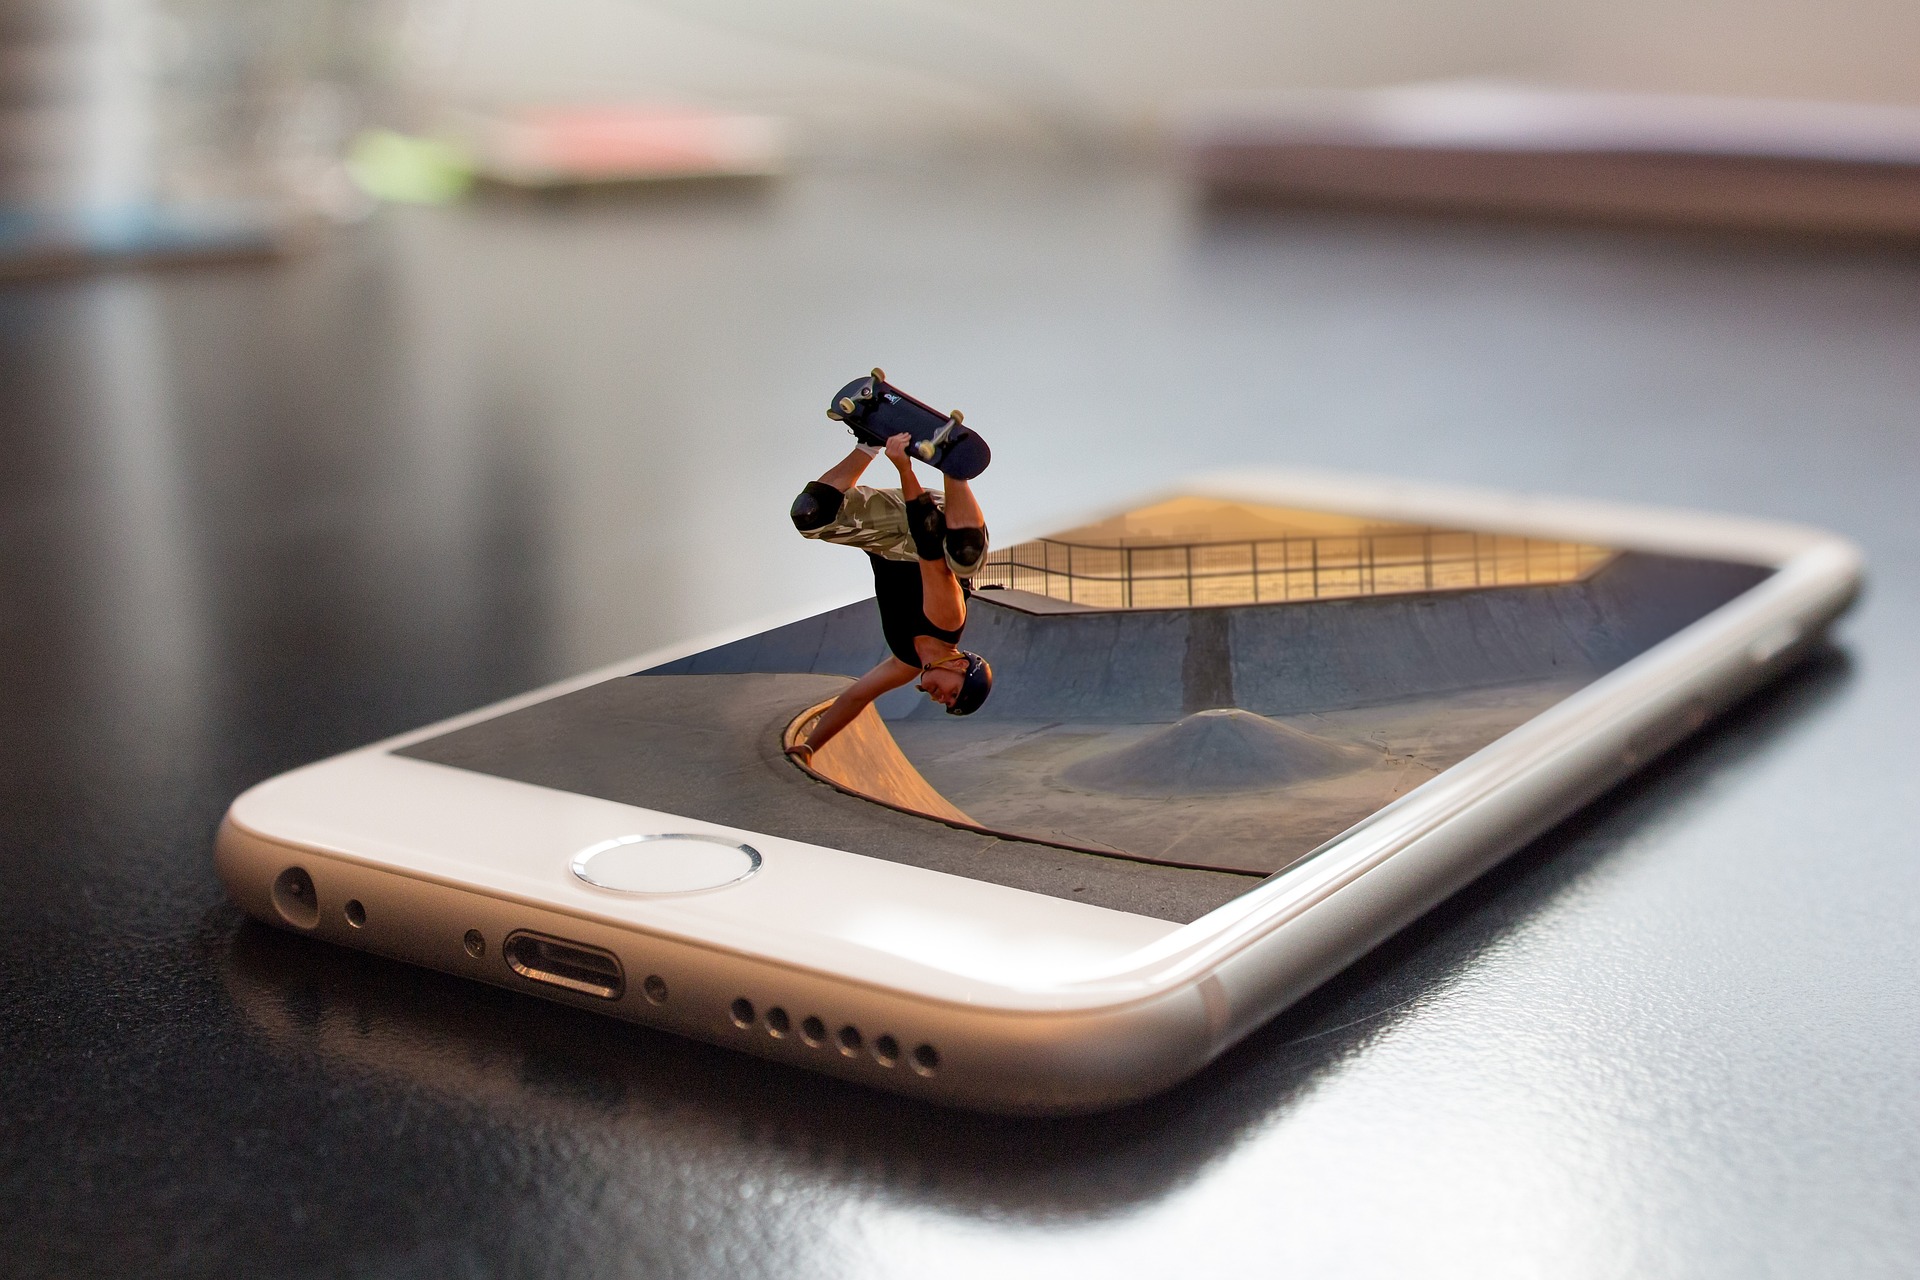 Ein Handy zeigt das Bild einer Rampe. Ein Skateboardfahrer springt aus dem Bild.